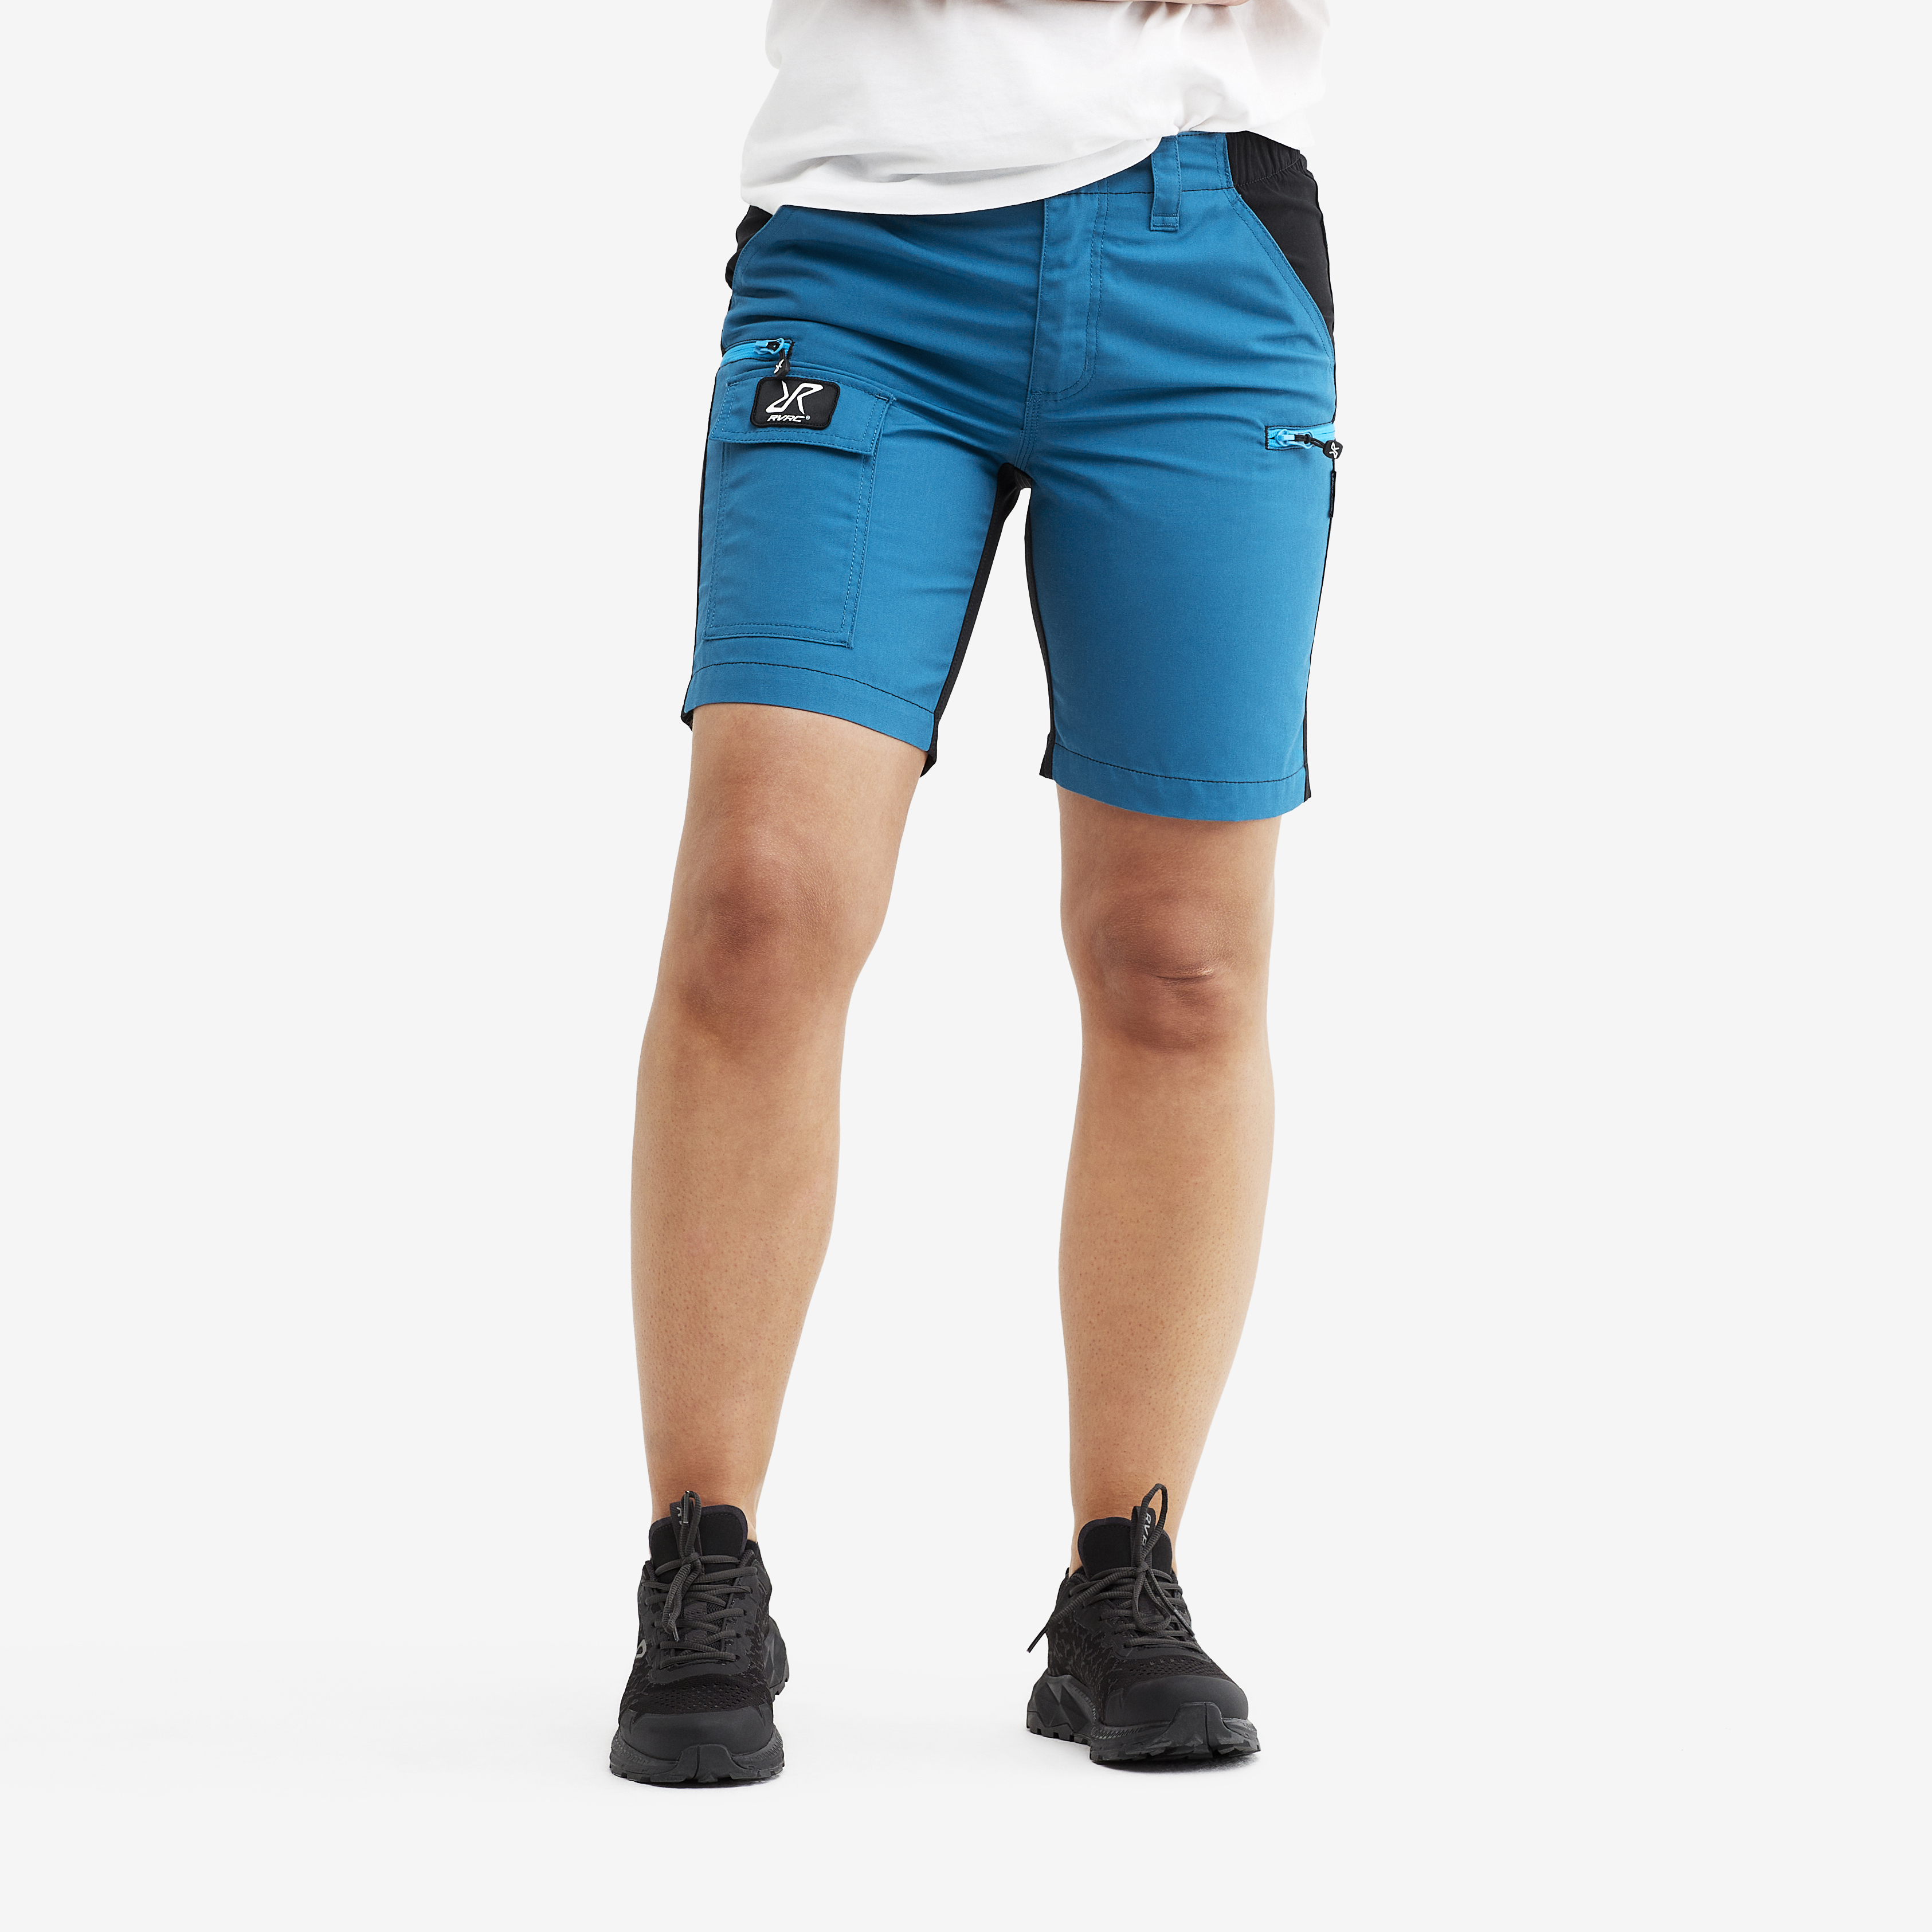 Nordwand shorts för dam i blått